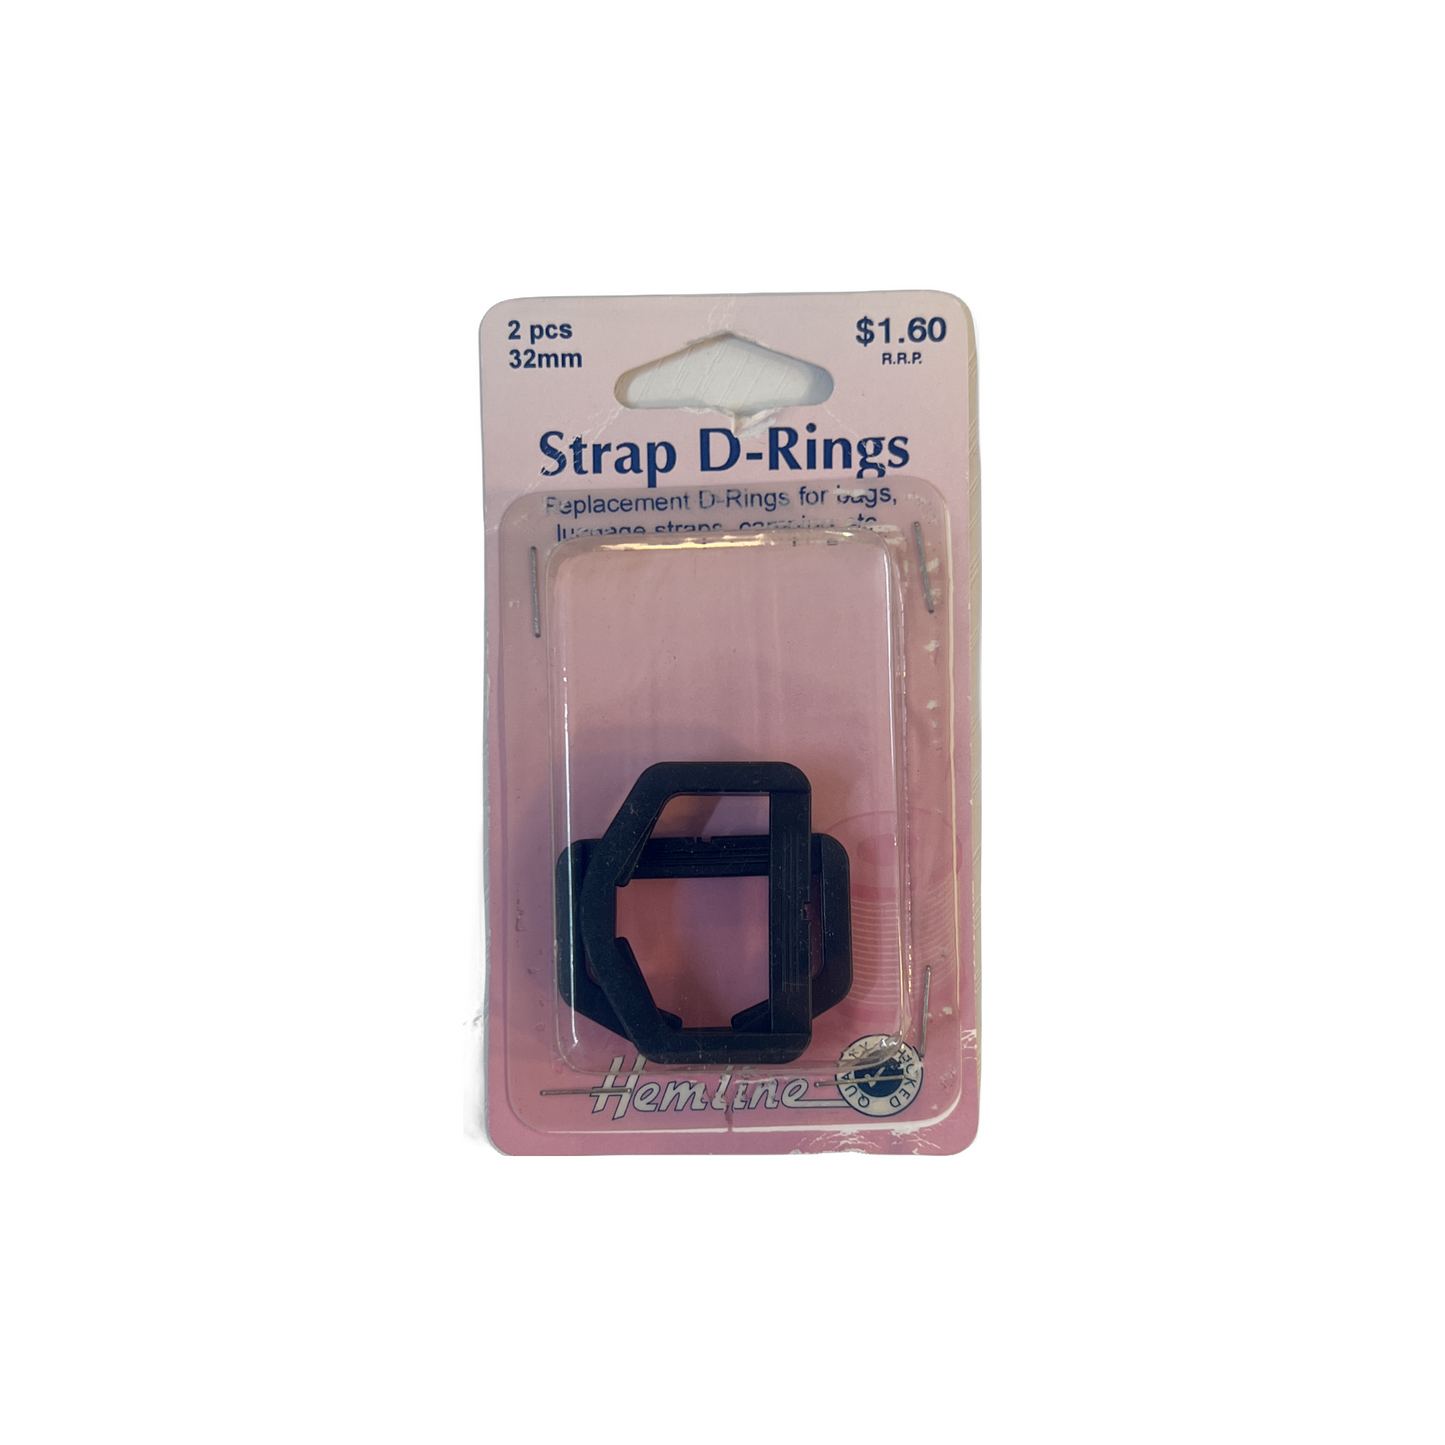 Hemline - Strap D-Rings: Black - 32mm